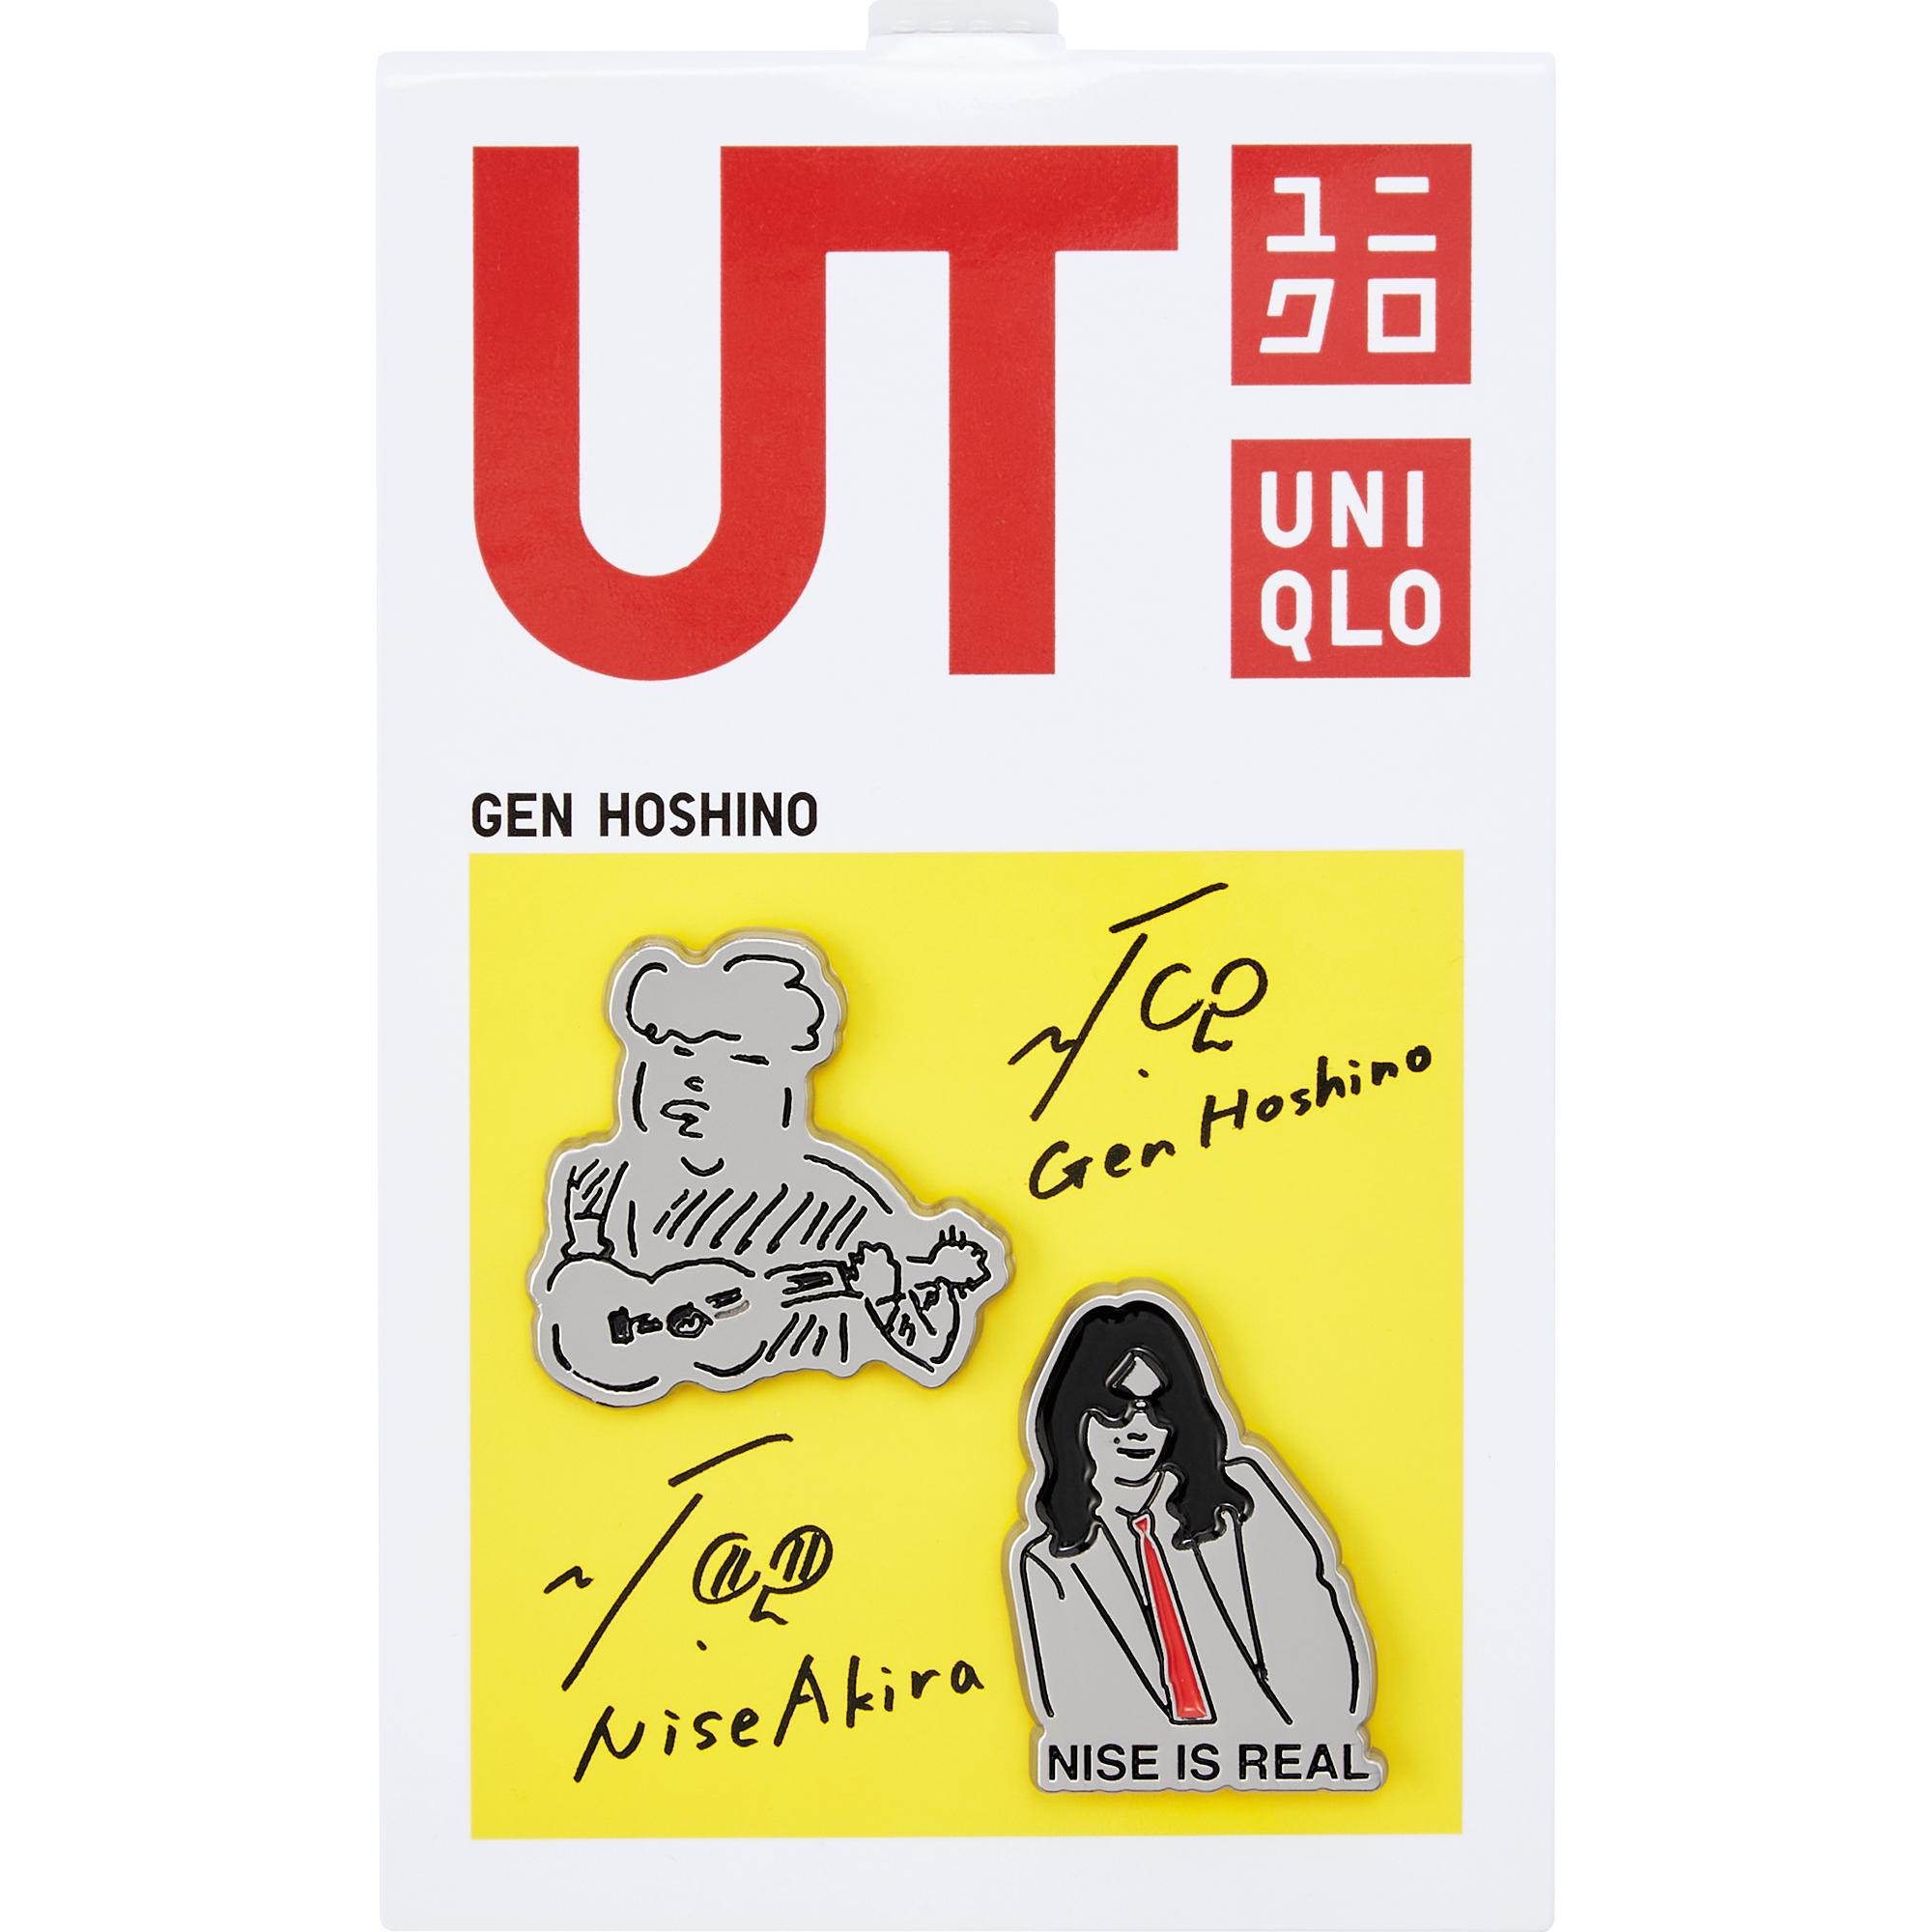 星野源 × ユニクロ「UT」のコラボは11月19日に発売 - TOKION